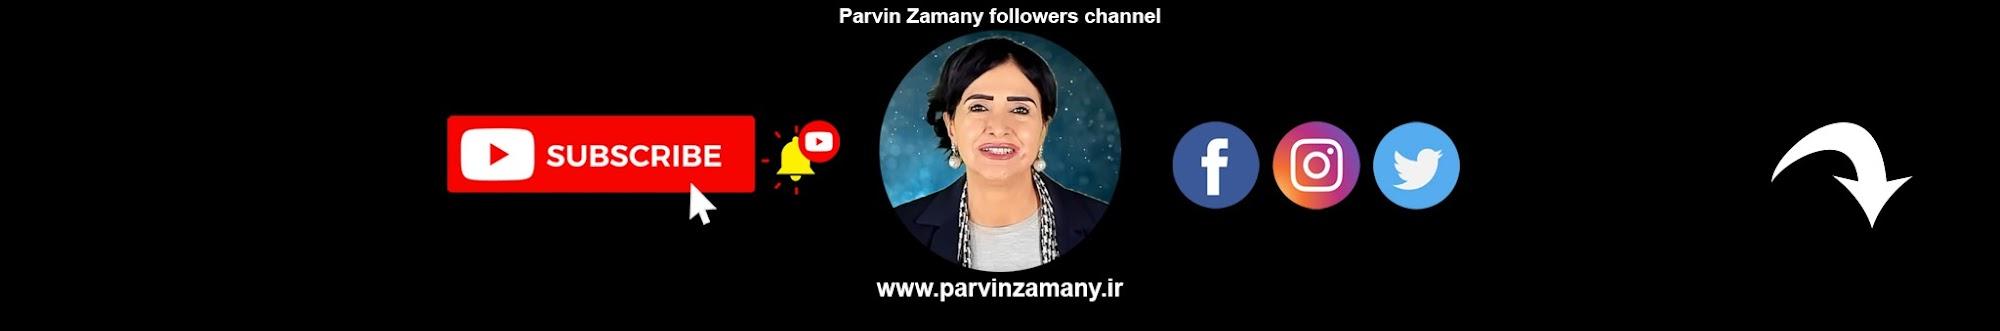 Parvin Zamany - پروین زمانی